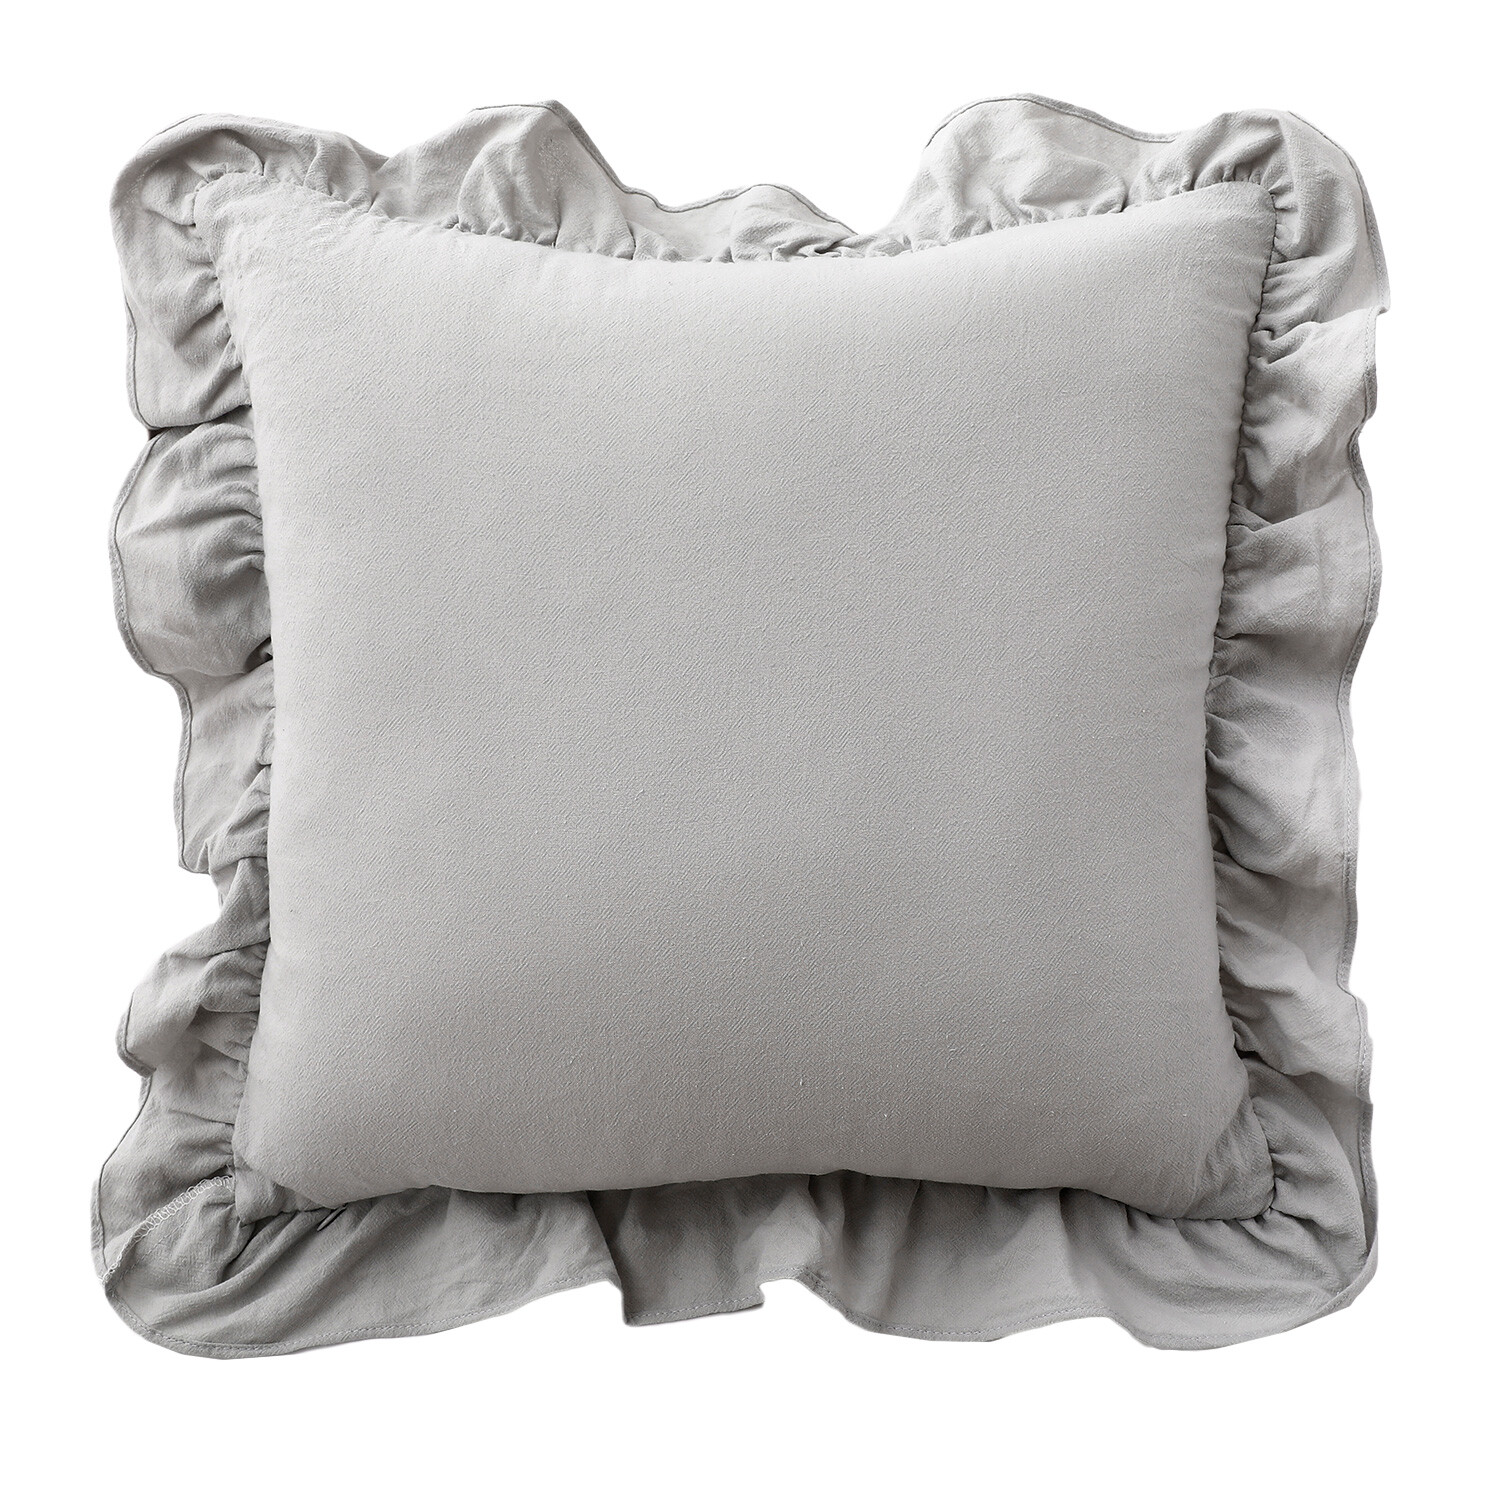 Amelie Ruffle Cushion - Grey Image 1